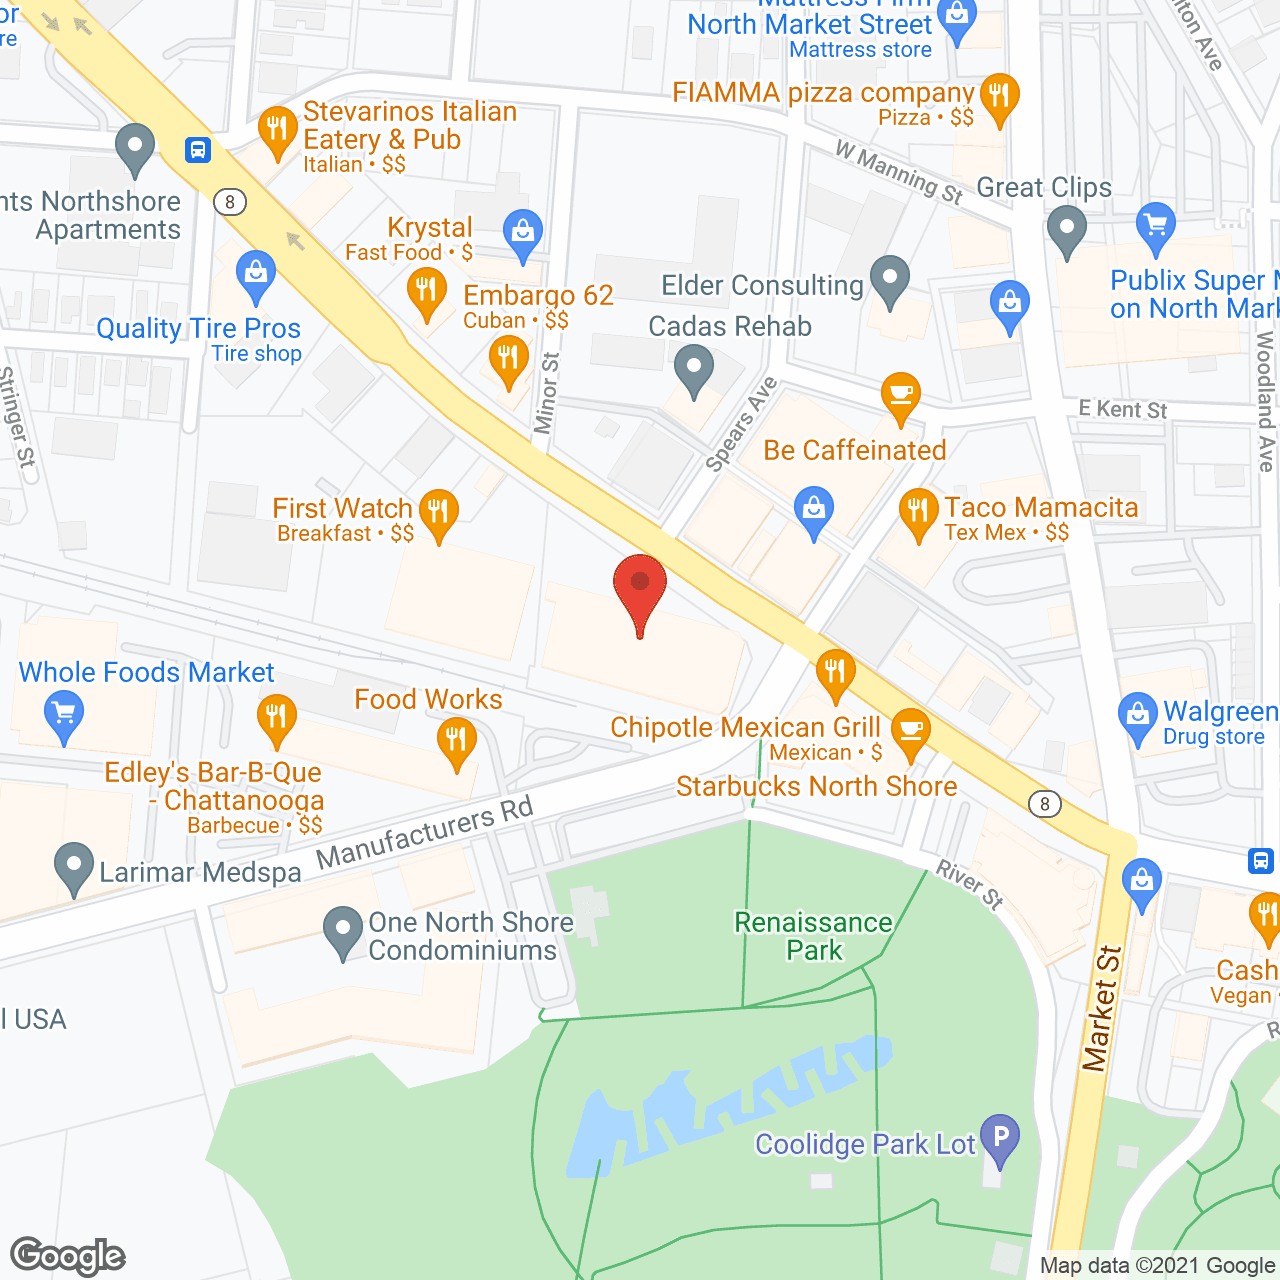 Aegin Place in google map